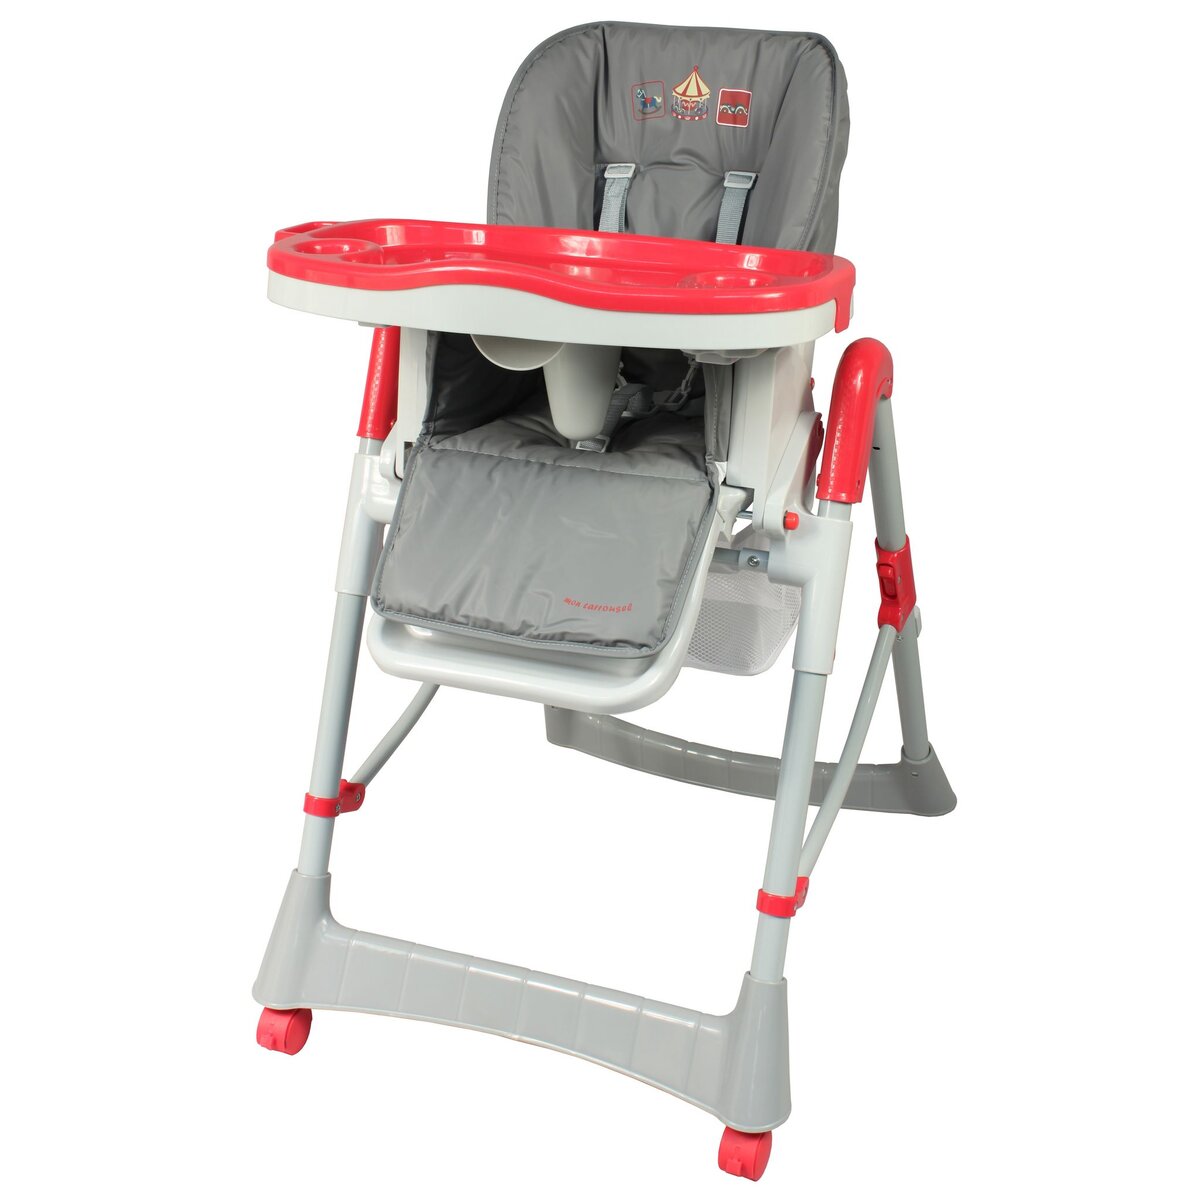 BAMBISOL Chaise haute bébé rouge/gris Carrousel 